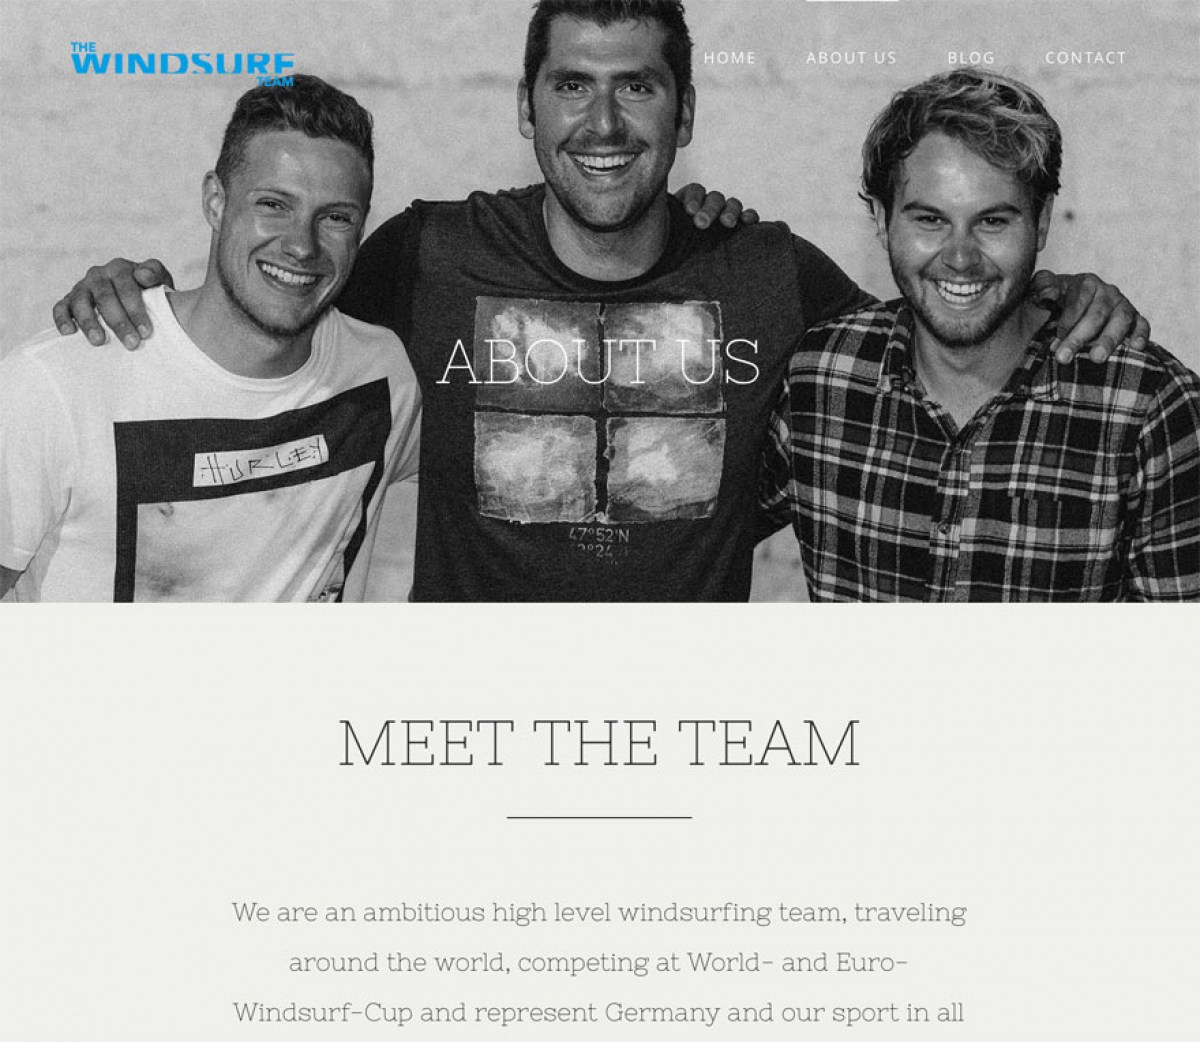 The Windsurf Team - Langer, Delle, Bochnia